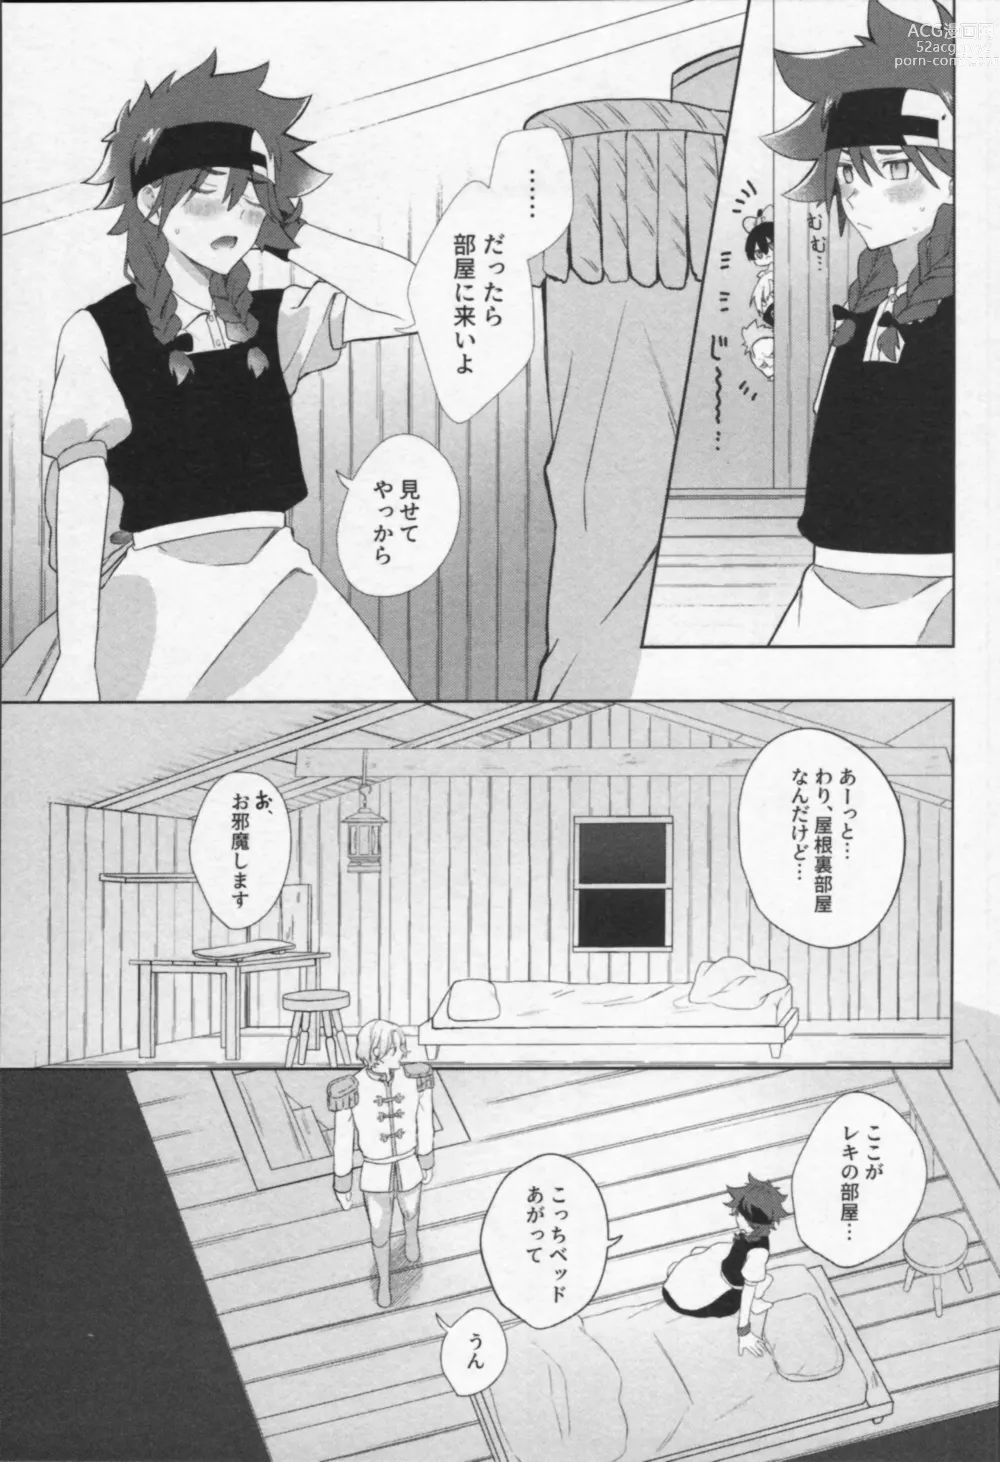 Page 8 of doujinshi Mahō ga tokete mo